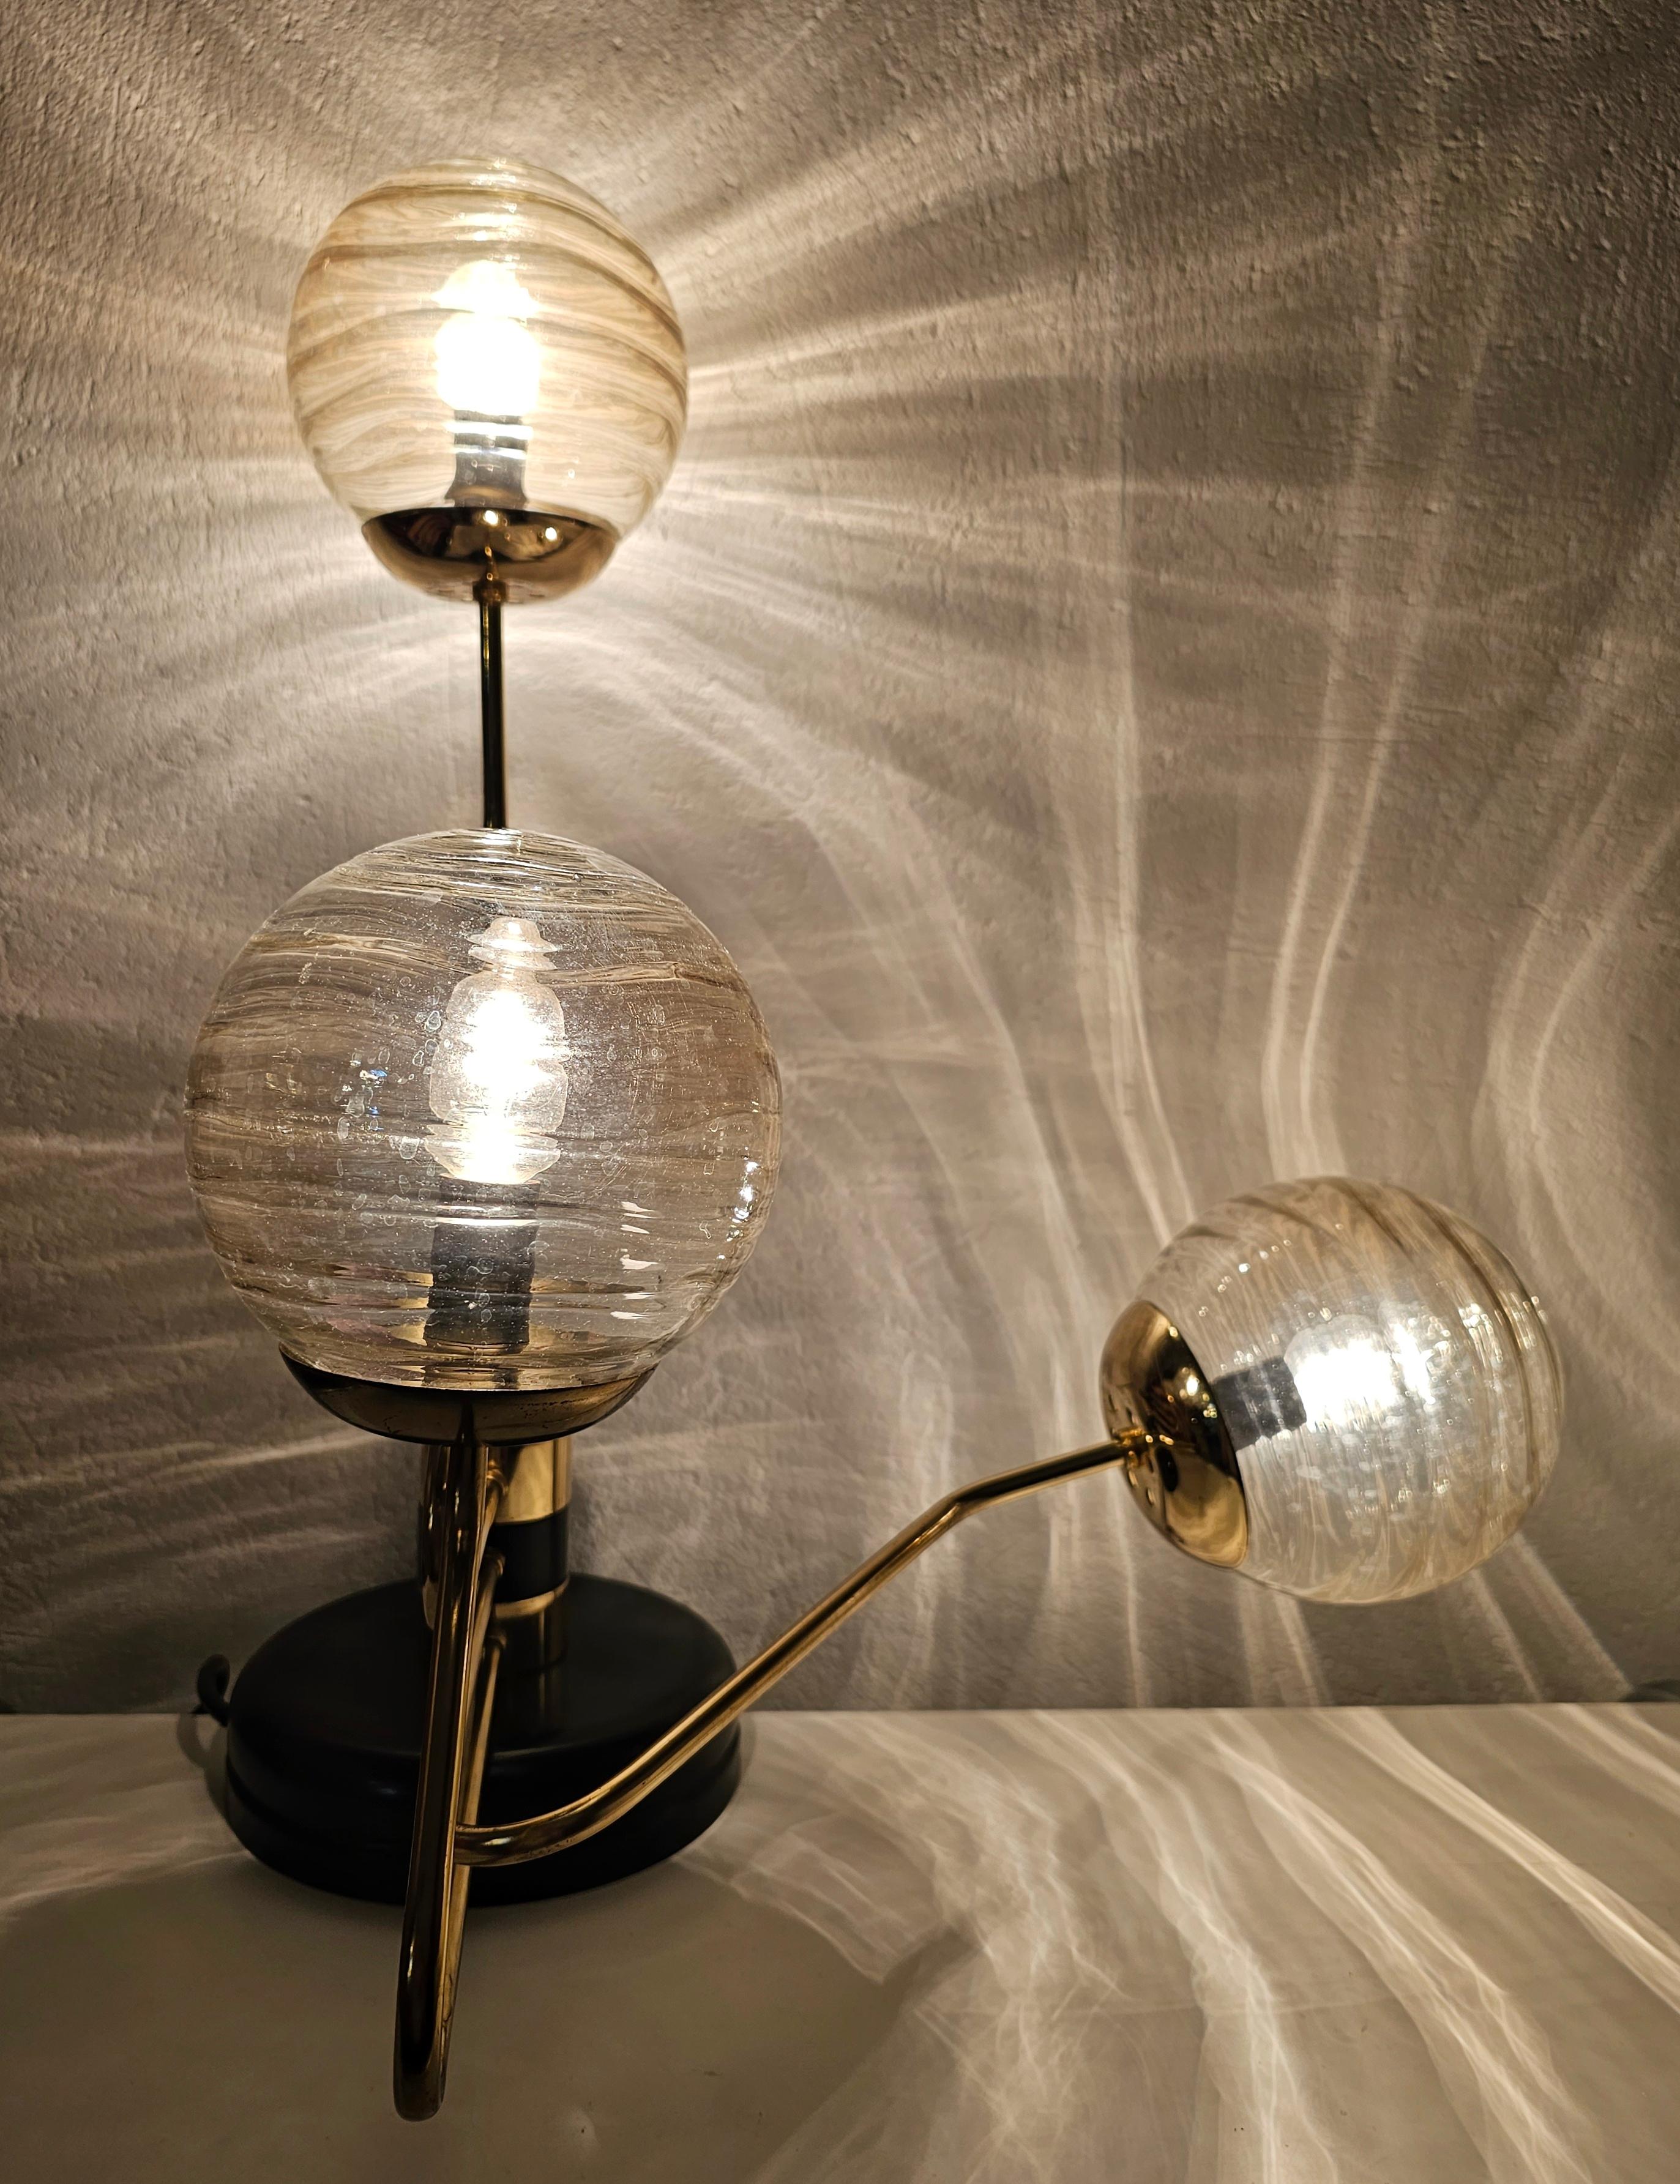 In diesem Angebot finden Sie eine schöne und elegante 3-armige Mid Century Modern Tischlampe im Stil von Goffredo Reggiani. Sie hat einen Sockel aus schwarzem Metall und Messing mit drei Reliefgläsern/Kugeln mit goldfarbenem Ton. Zwei der drei Arme